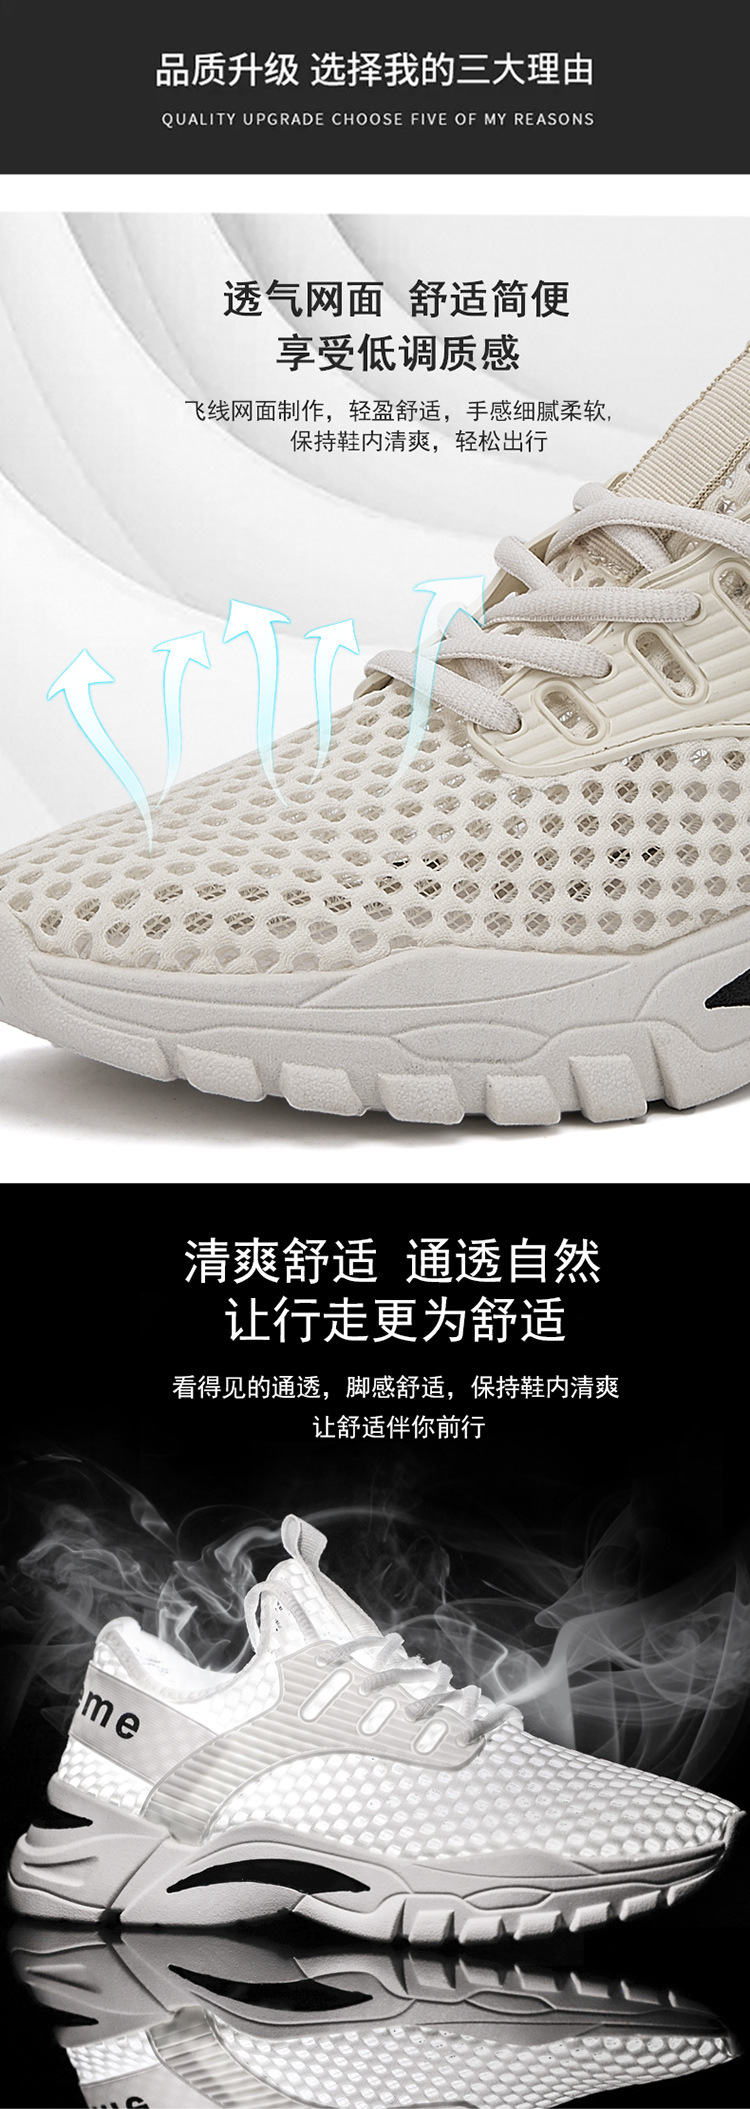 XP2021新款夏季网鞋透气百搭运动鞋男士休闲鞋韩版网面潮流男鞋